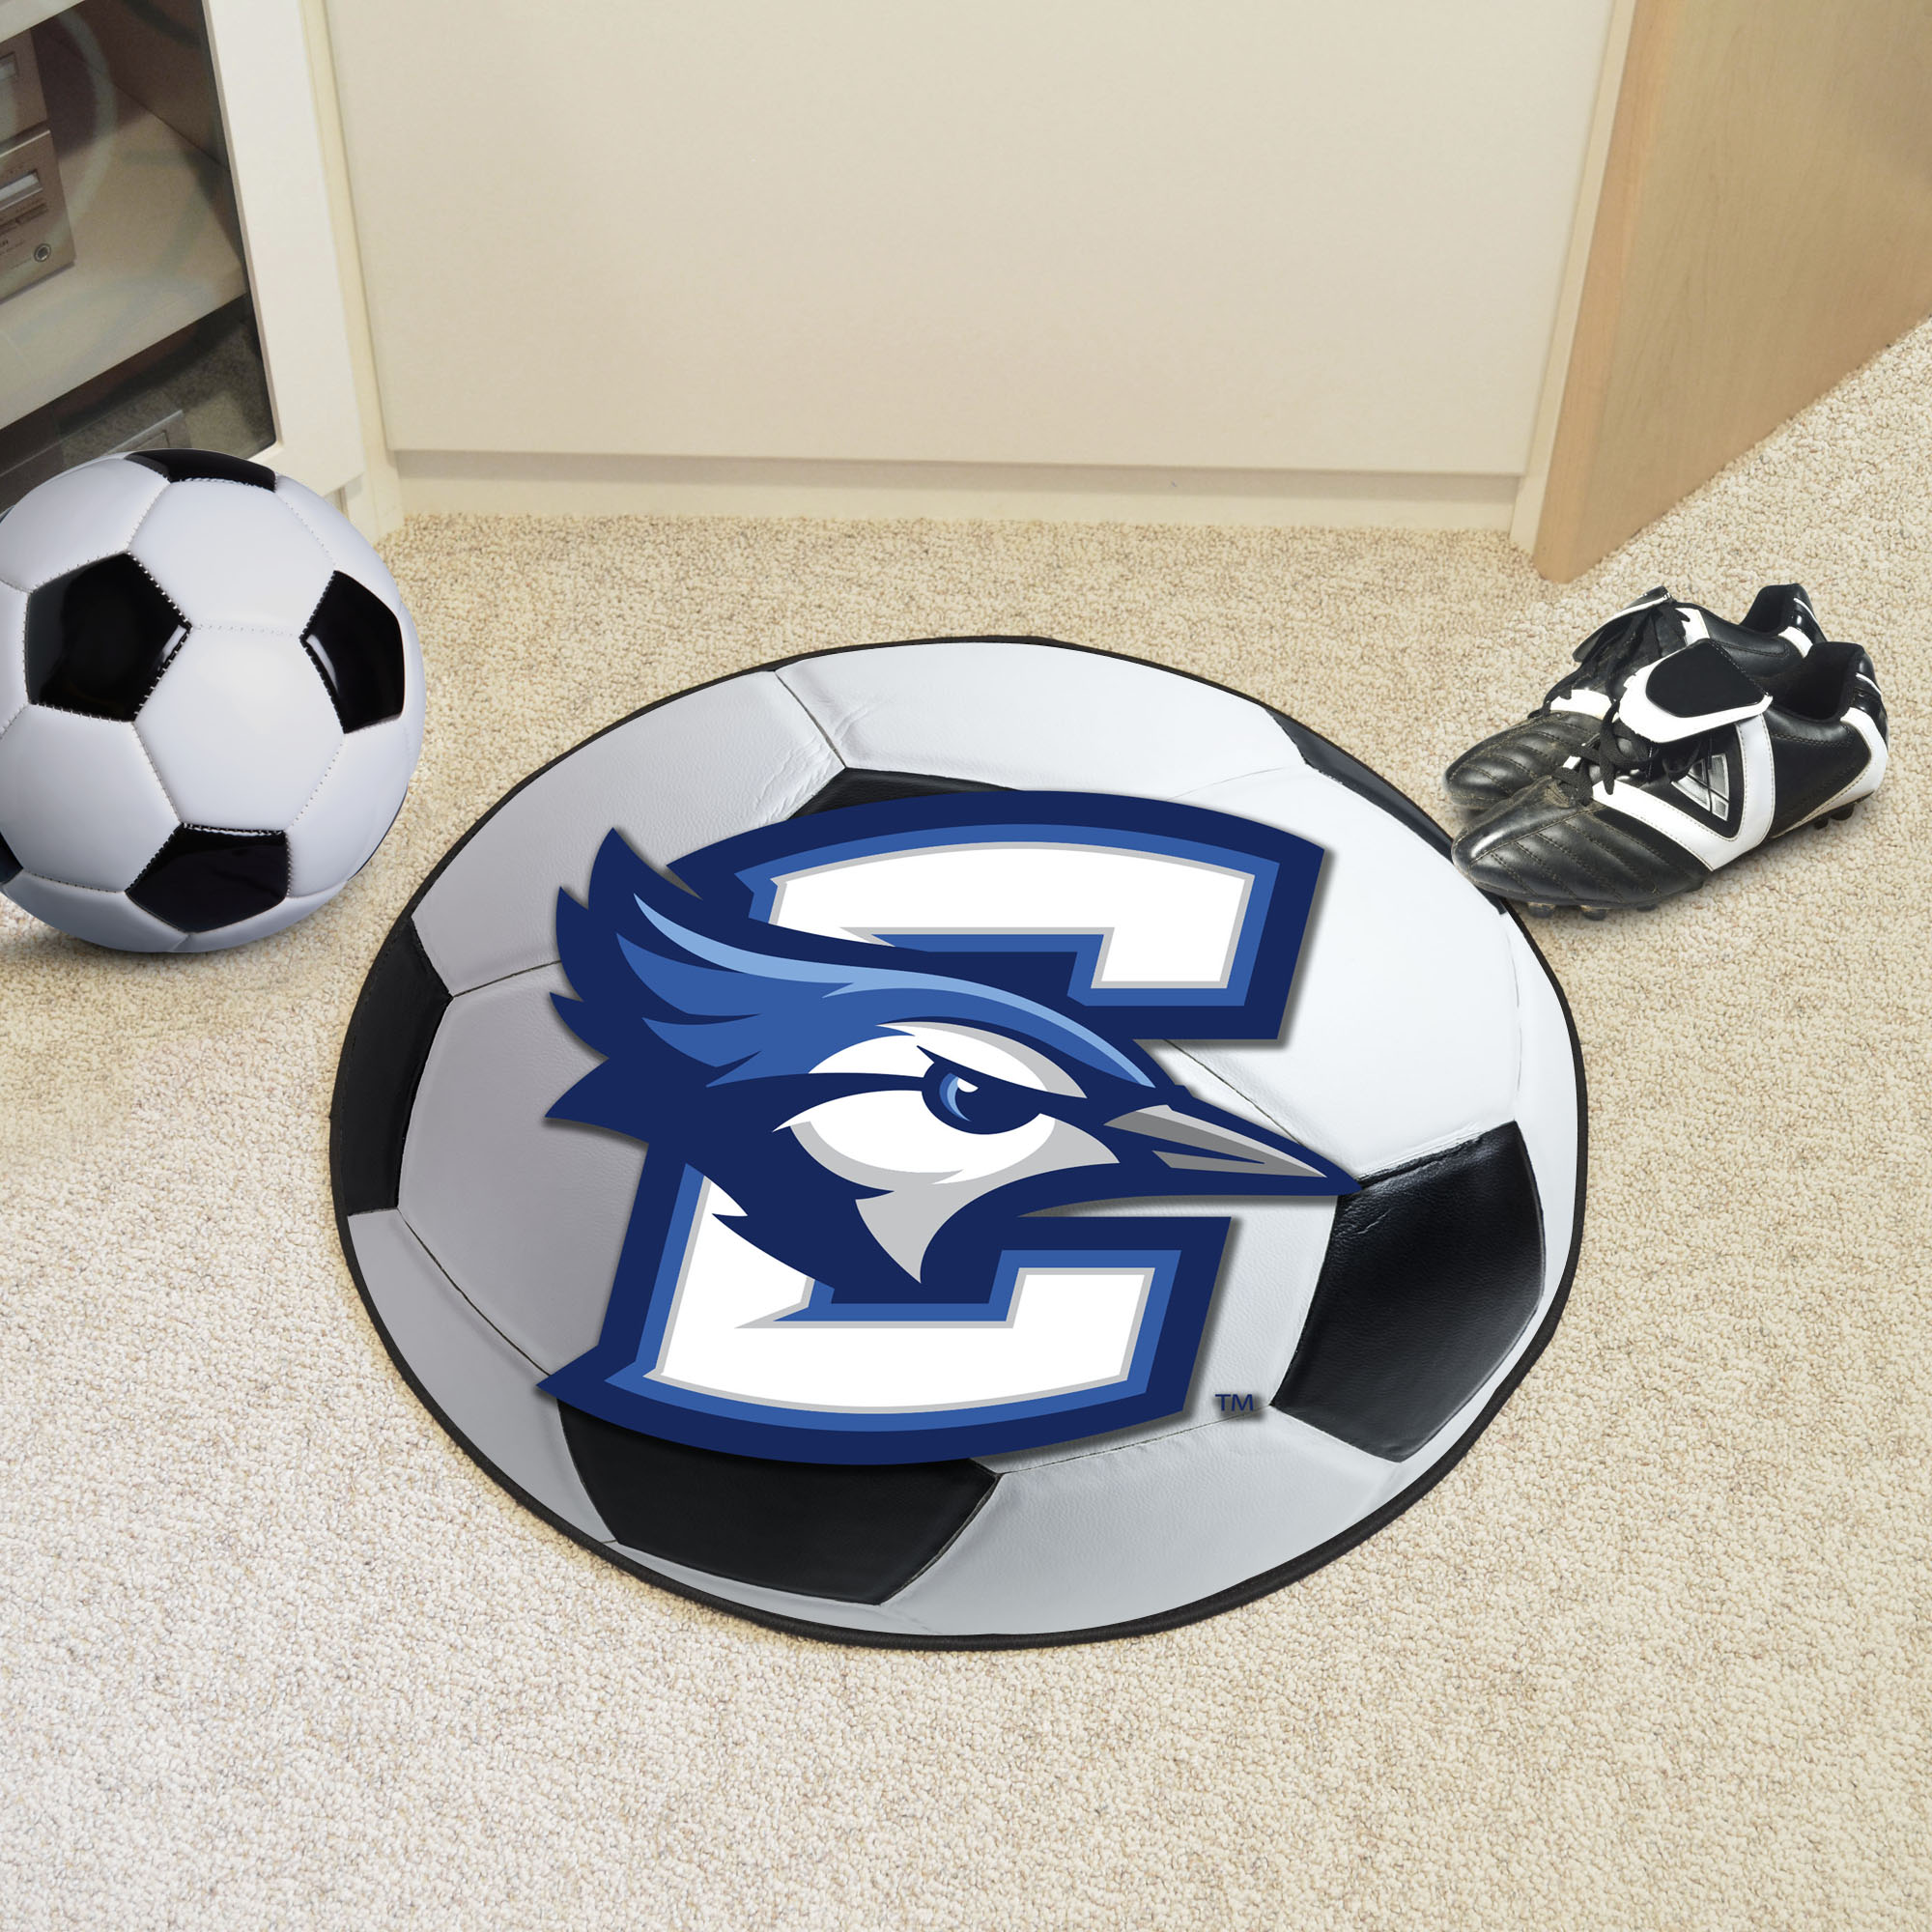 Creighton University Area Rugs - Nylon Ball Shaped (Ball Shaped Area Rugs: Soccer Ball)